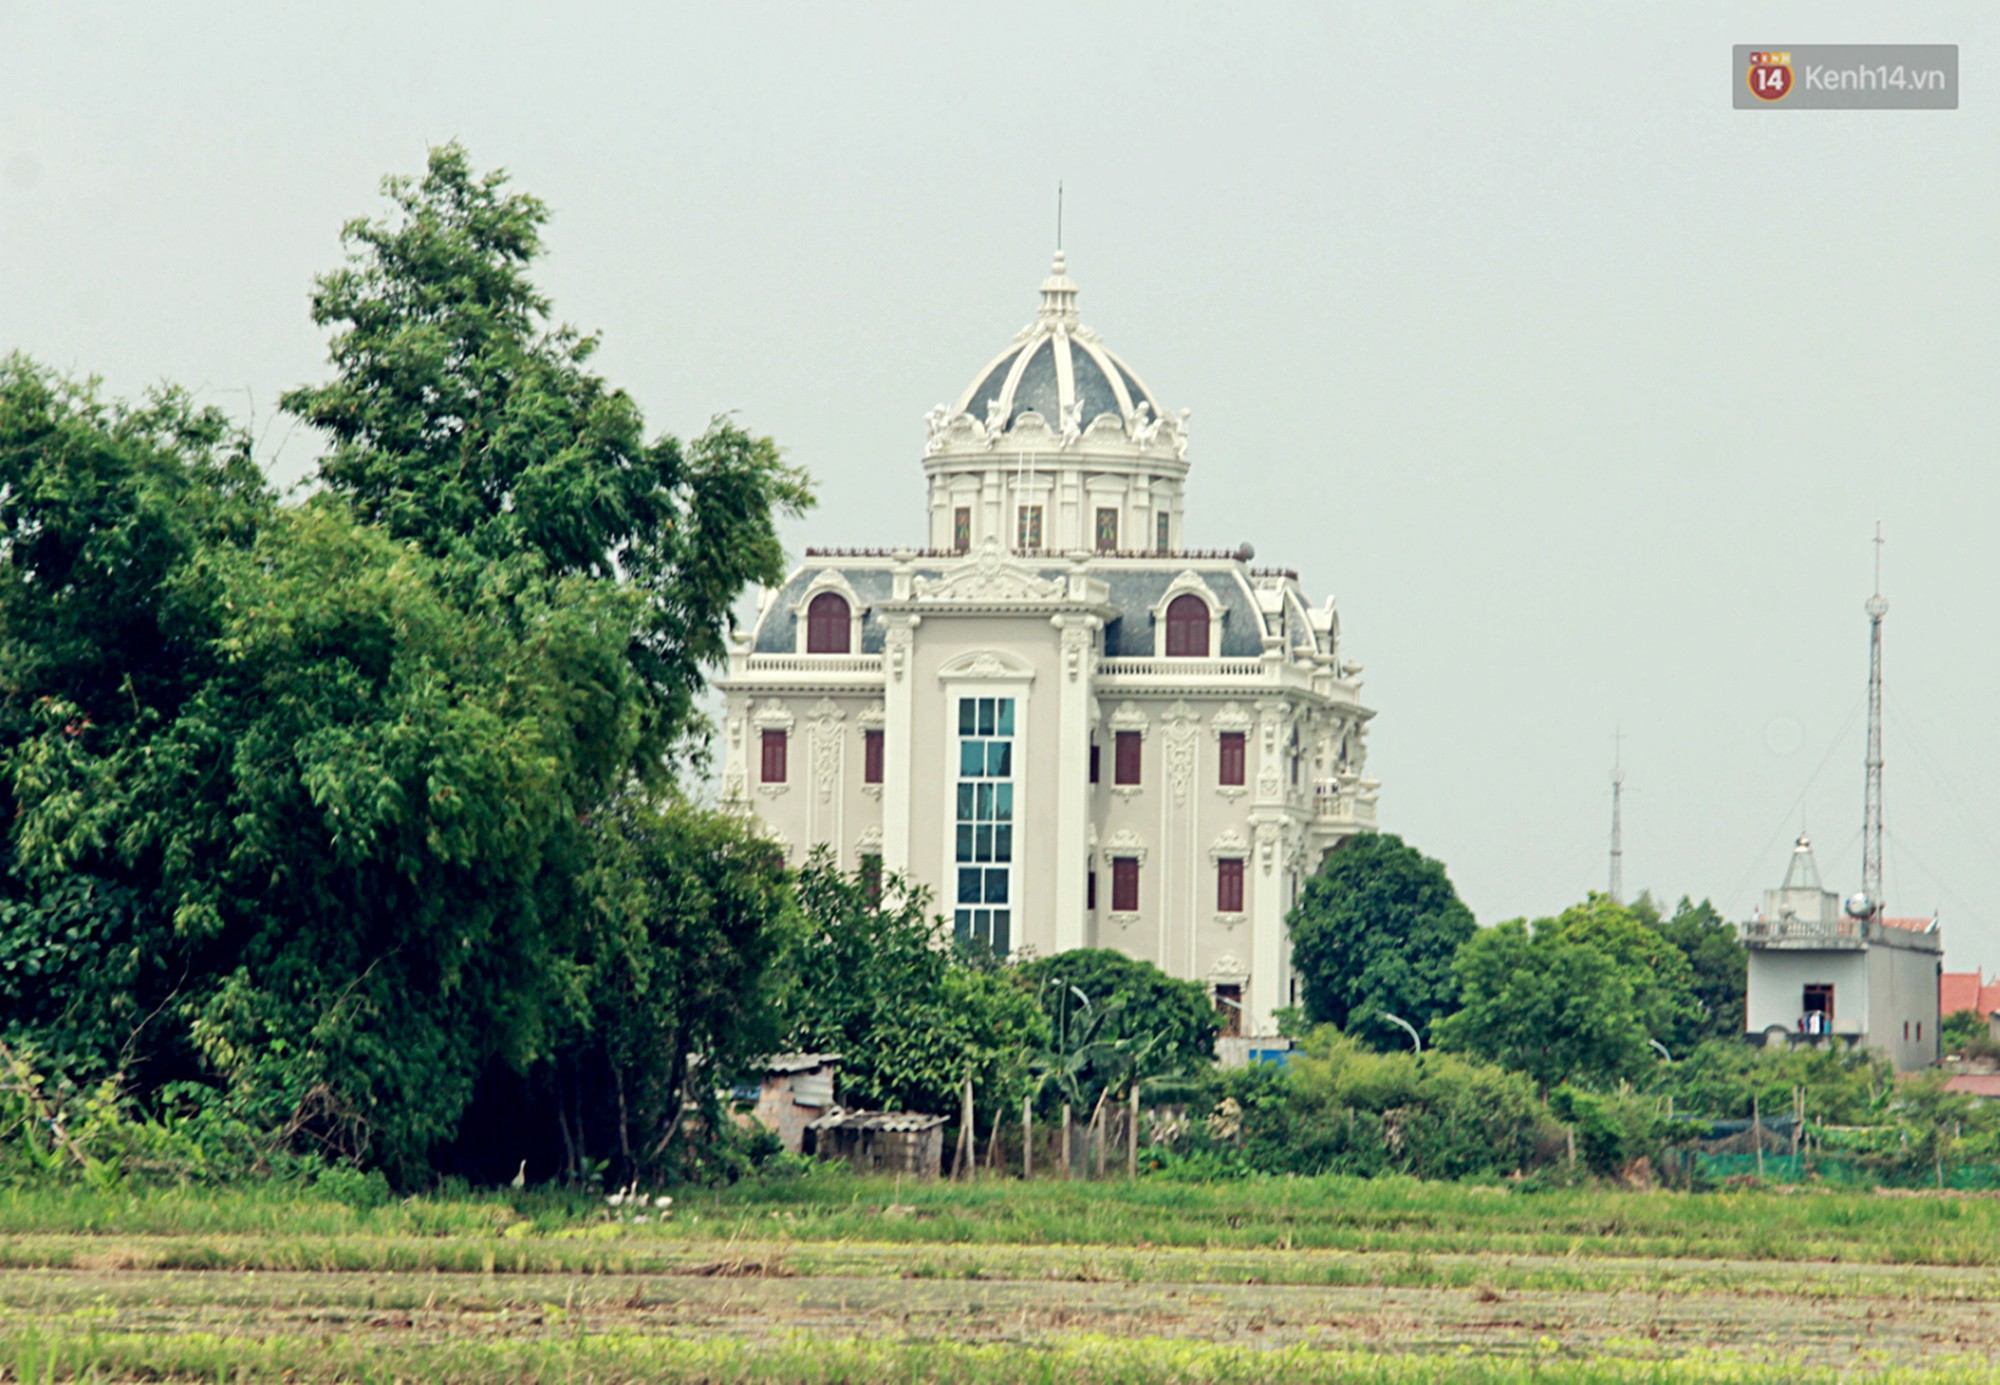 Về làng tỷ phú Nam Định chiêm ngưỡng những tòa lâu đài nguy nga tráng lệ theo phong cách Châu Âu - Ảnh 4.